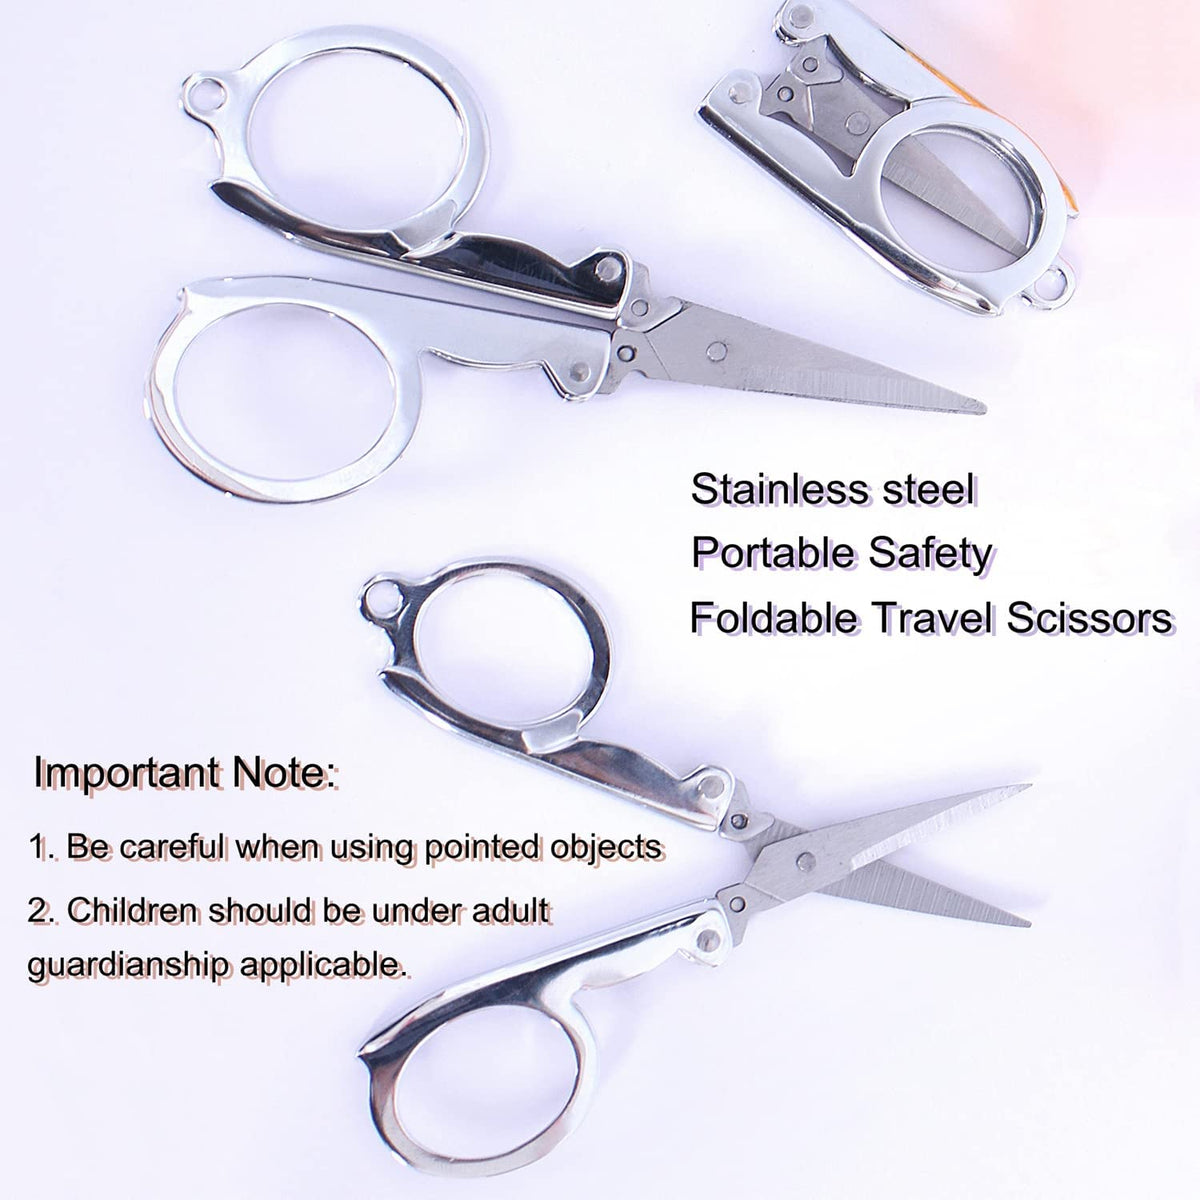 Folding stainless steel scissors portable mini travel scissors